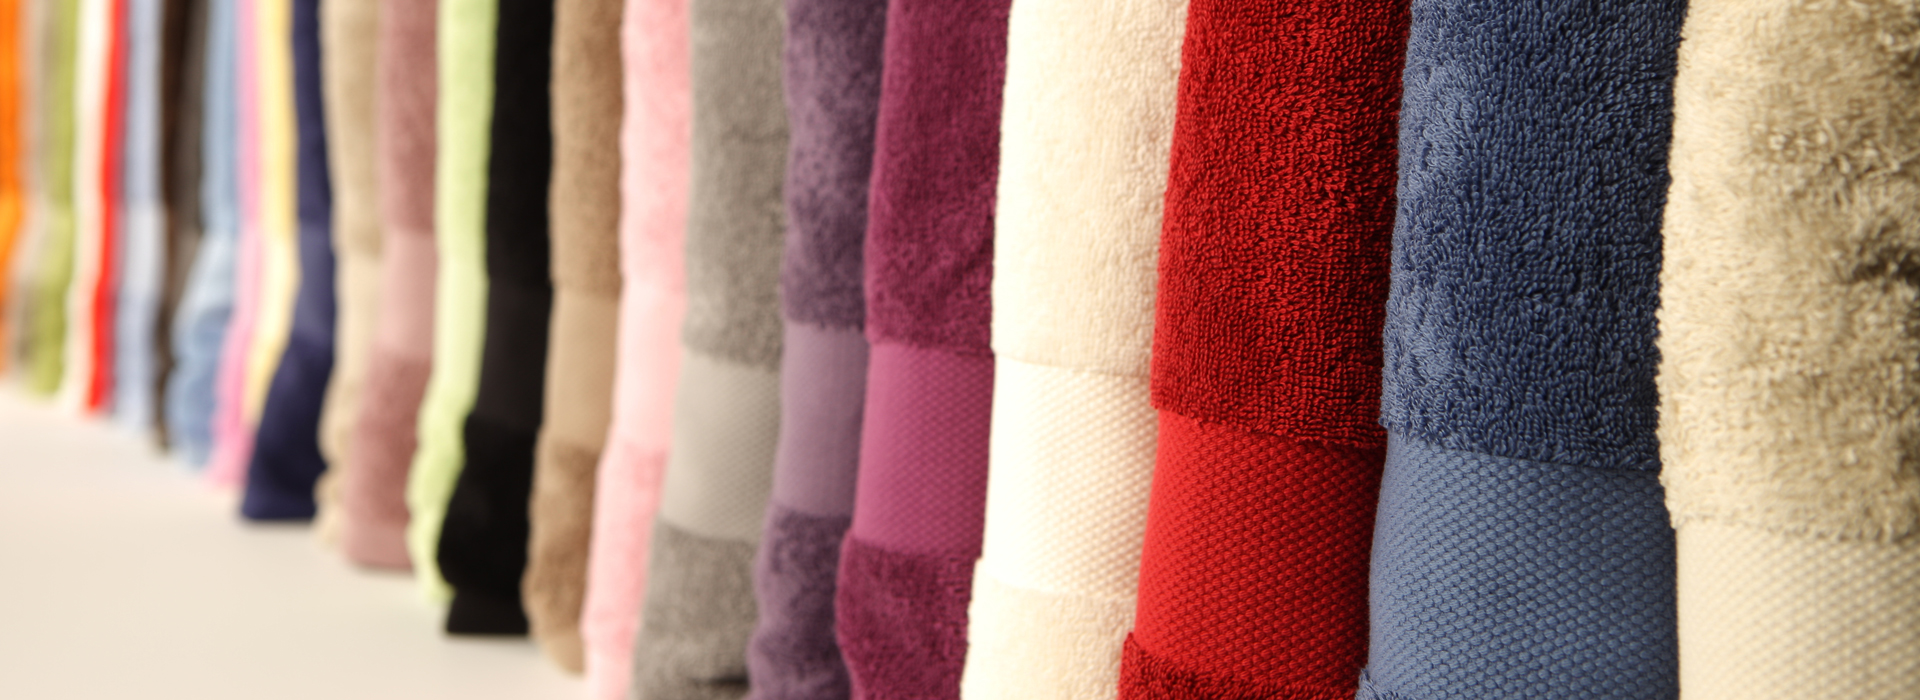 Cavalieri Spa - Biancheria per la casa dal 1955: qualità Italiana. Immagine di asciugamani di tessuto morbido e varianti di colore.